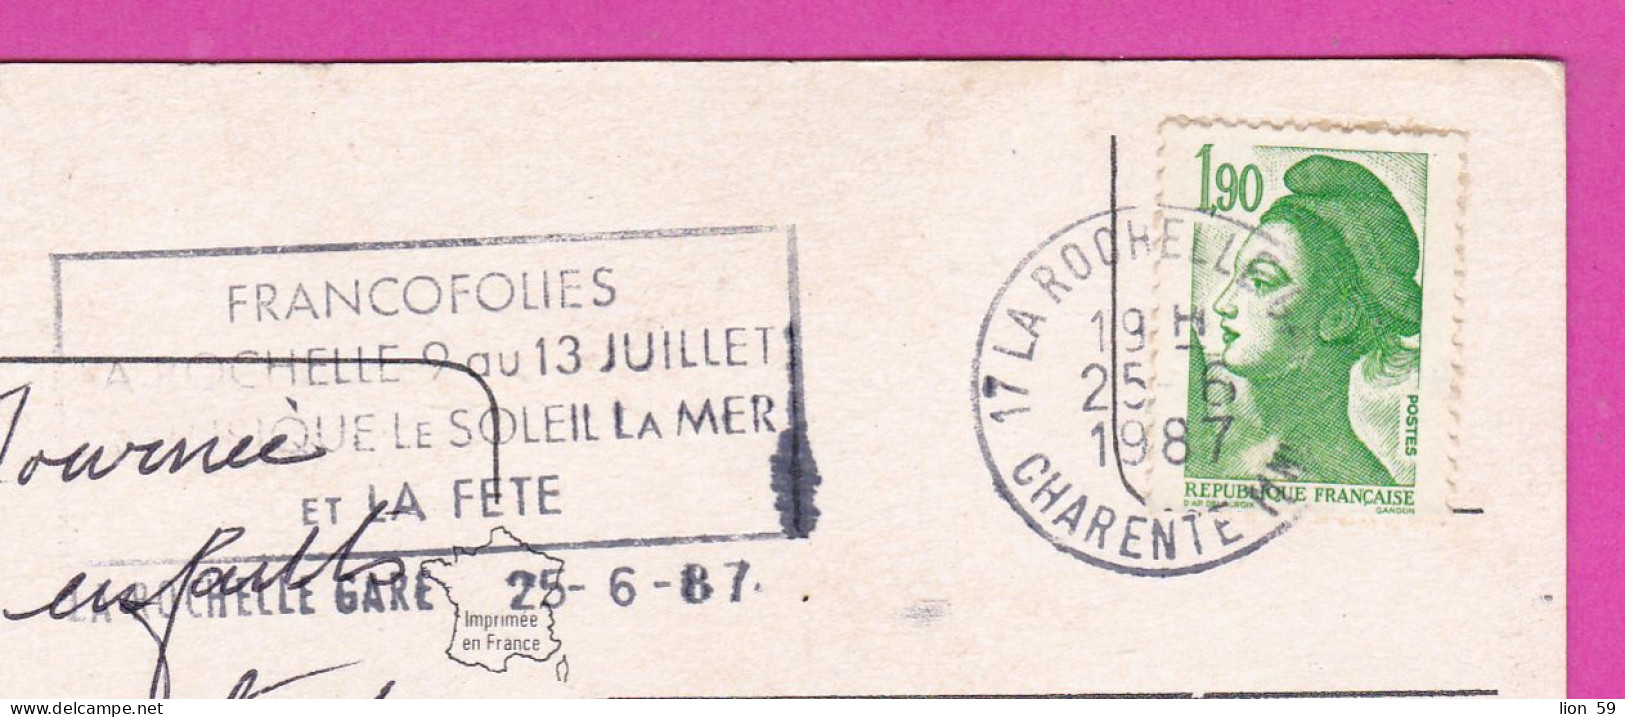 294219 / France - La Rochelle En Aunis PC 1987 USED 1.90 Fr. Liberty Of Gandon , Flamme Musique Le Soleil La Mer Et La F - 1982-1990 Liberty Of Gandon